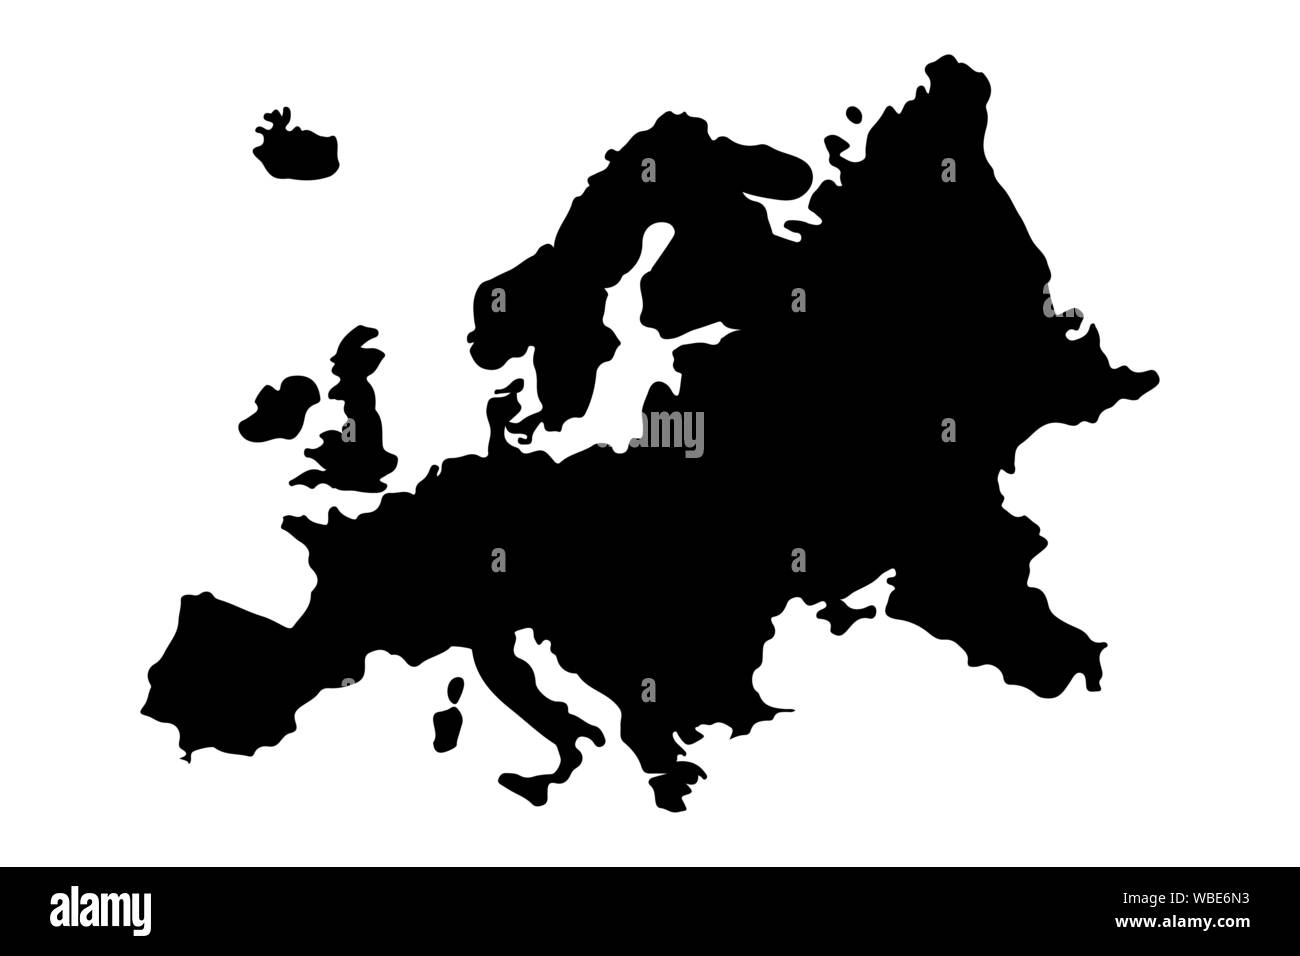 Europa Karte Silhouette Vektor-illustration EPS 10. Stock Vektor